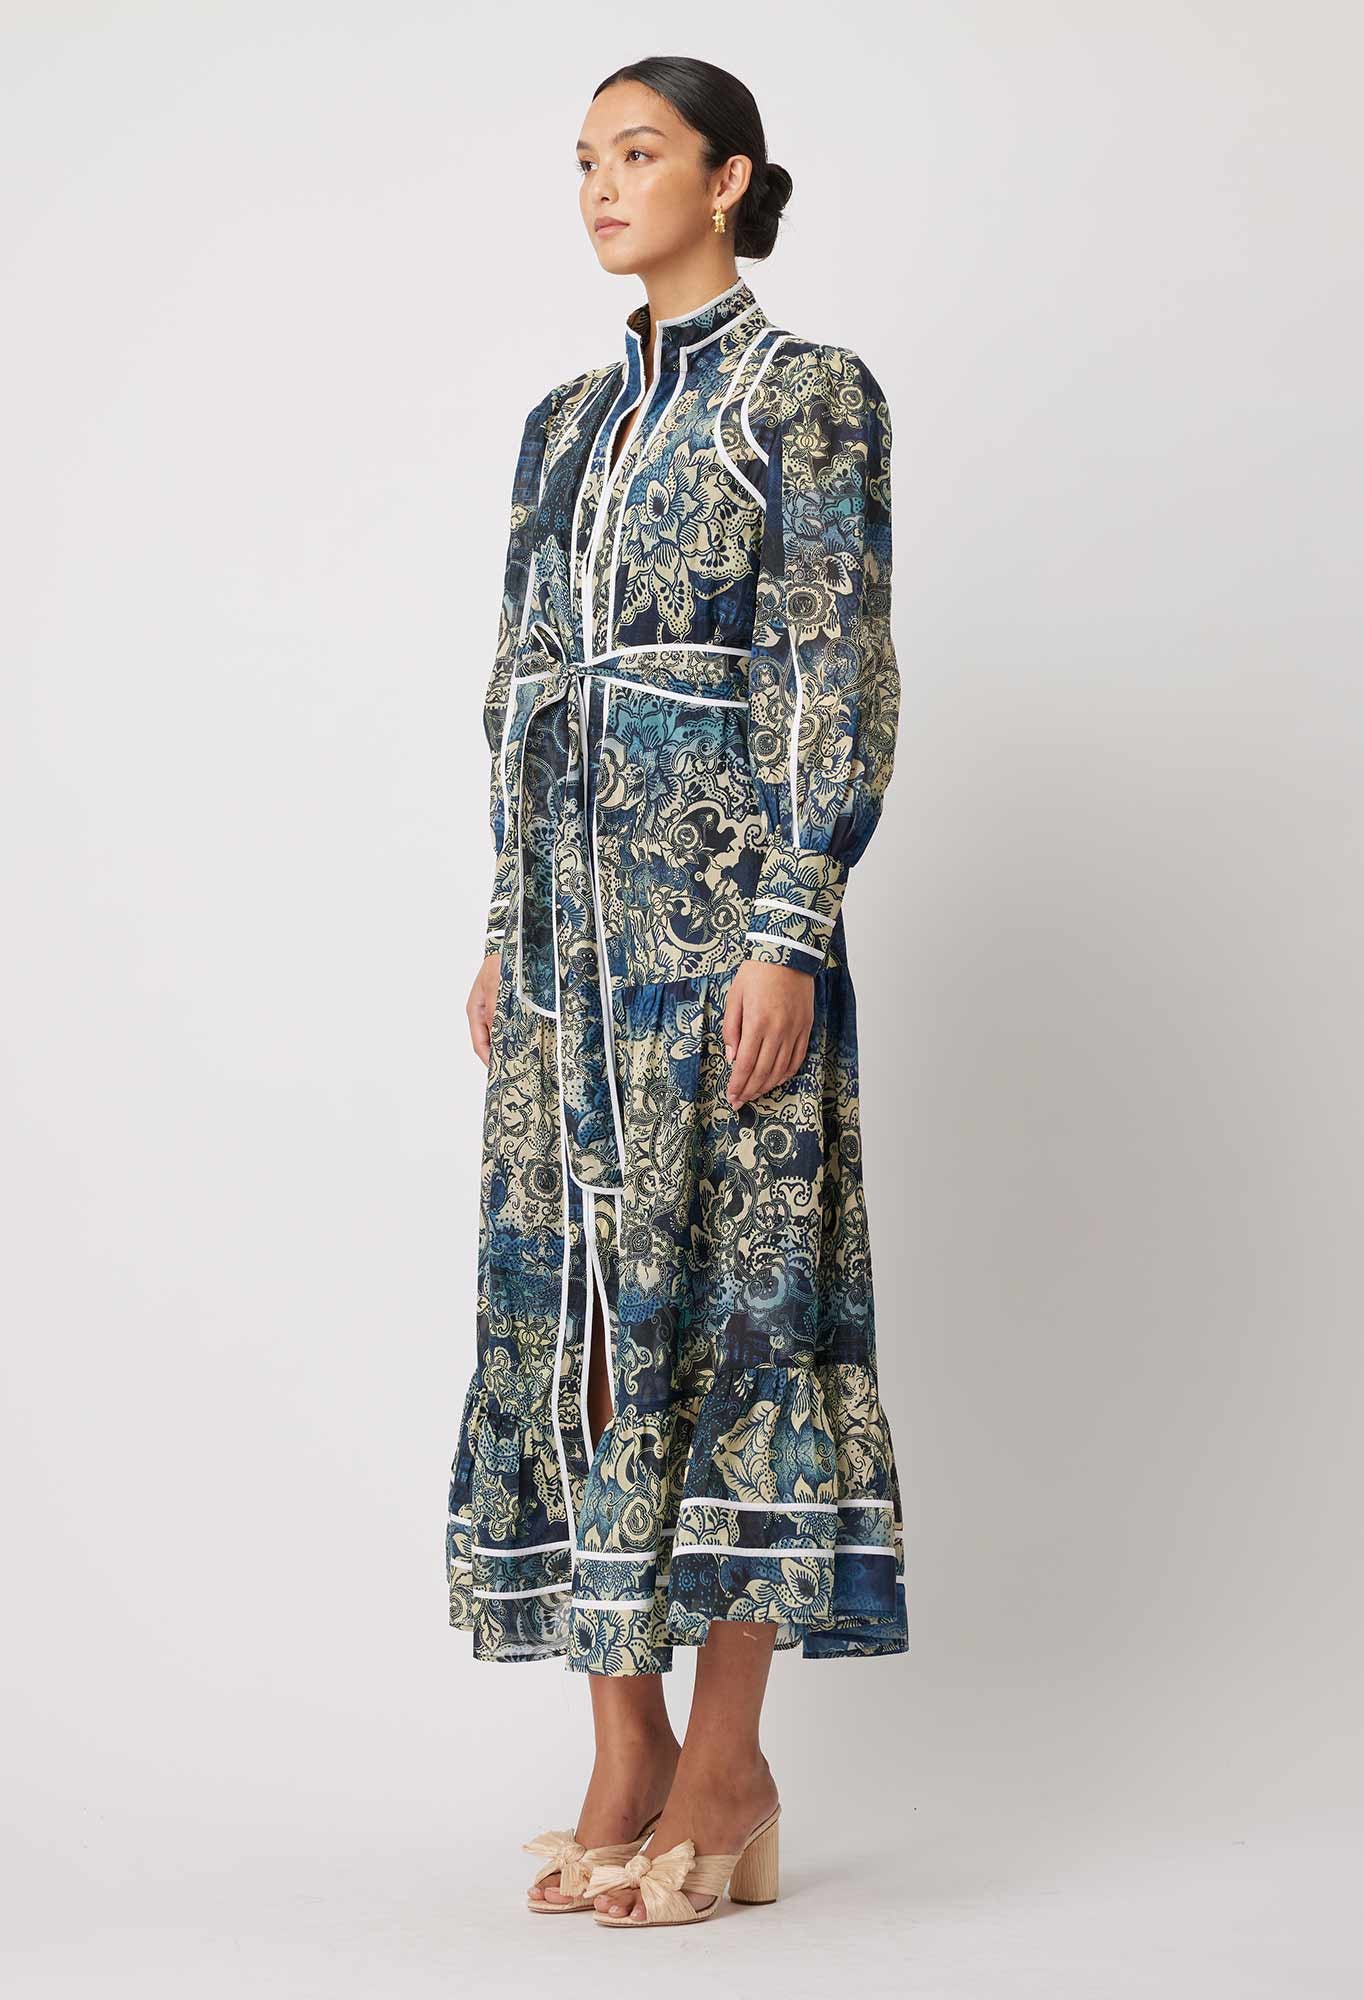 Pantea Silk/Cotton Dress in Esfahan Print